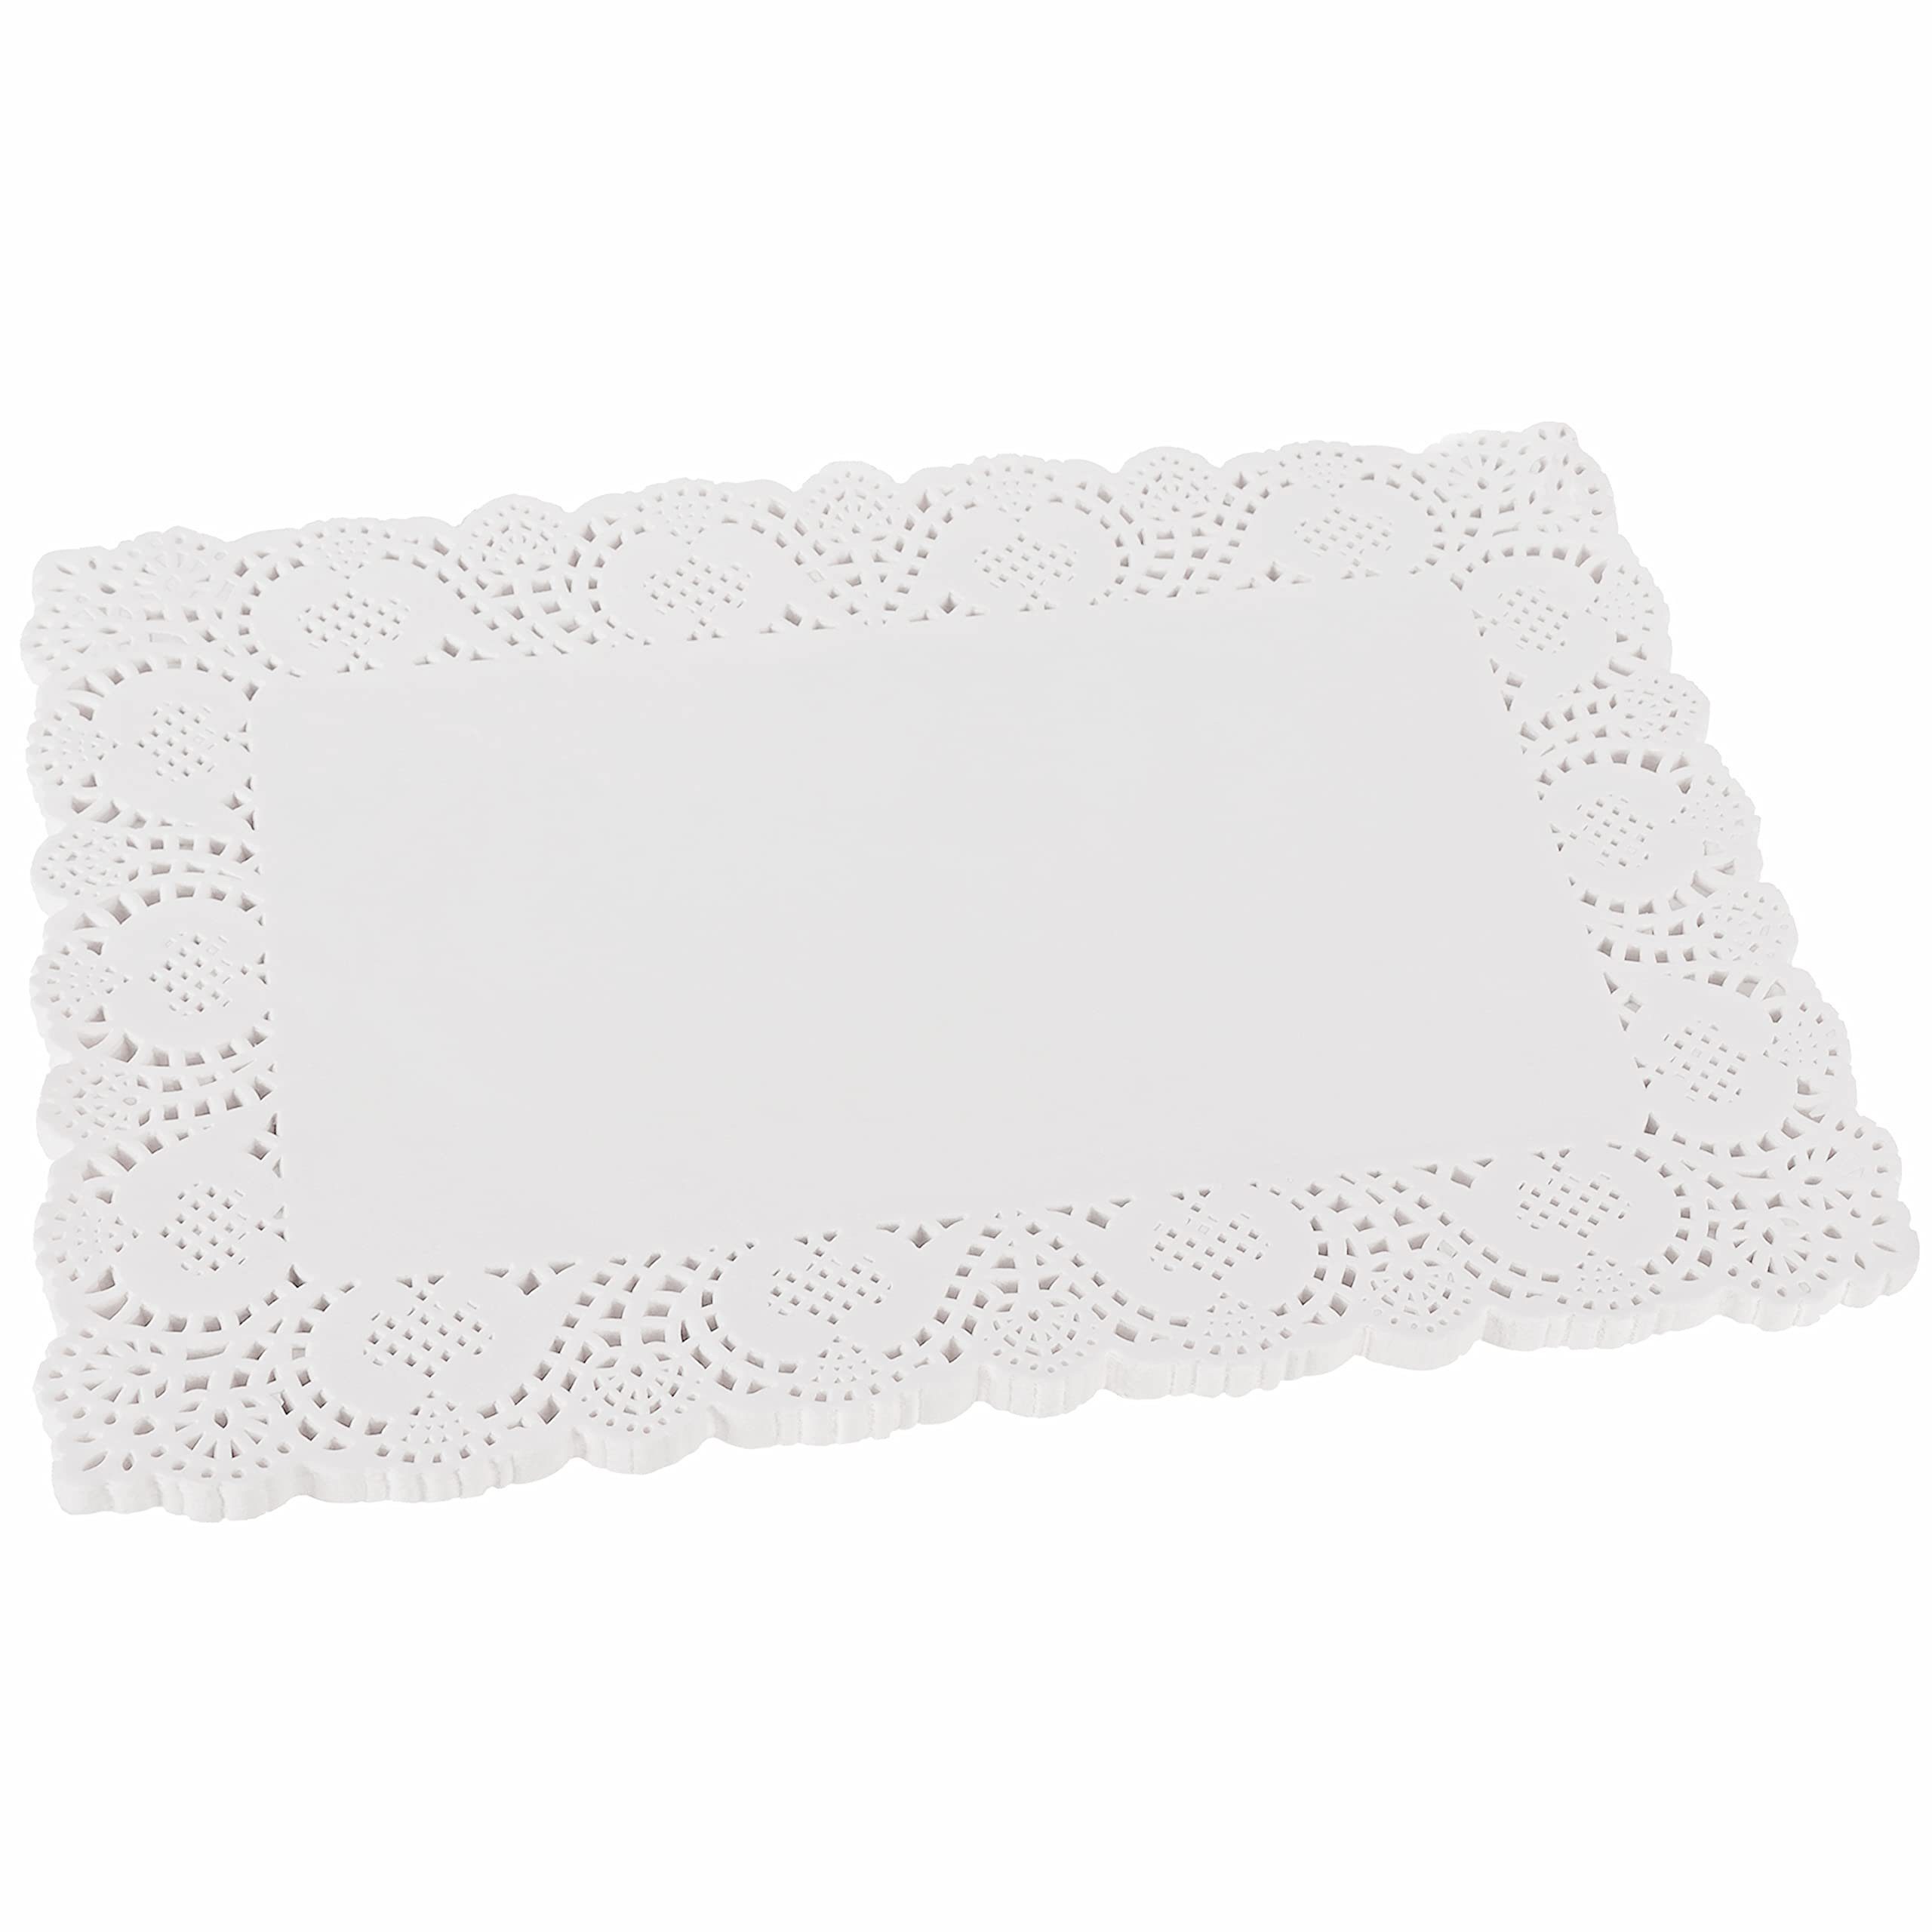 Belle Paper Base Aquarellpapier White Cake White Decoration Lace 100pcs Paper 36.5x26cm 36.5x26cm 100pcs Wedding Lace Vous Base Decor, Wedding Cake Cake Cake